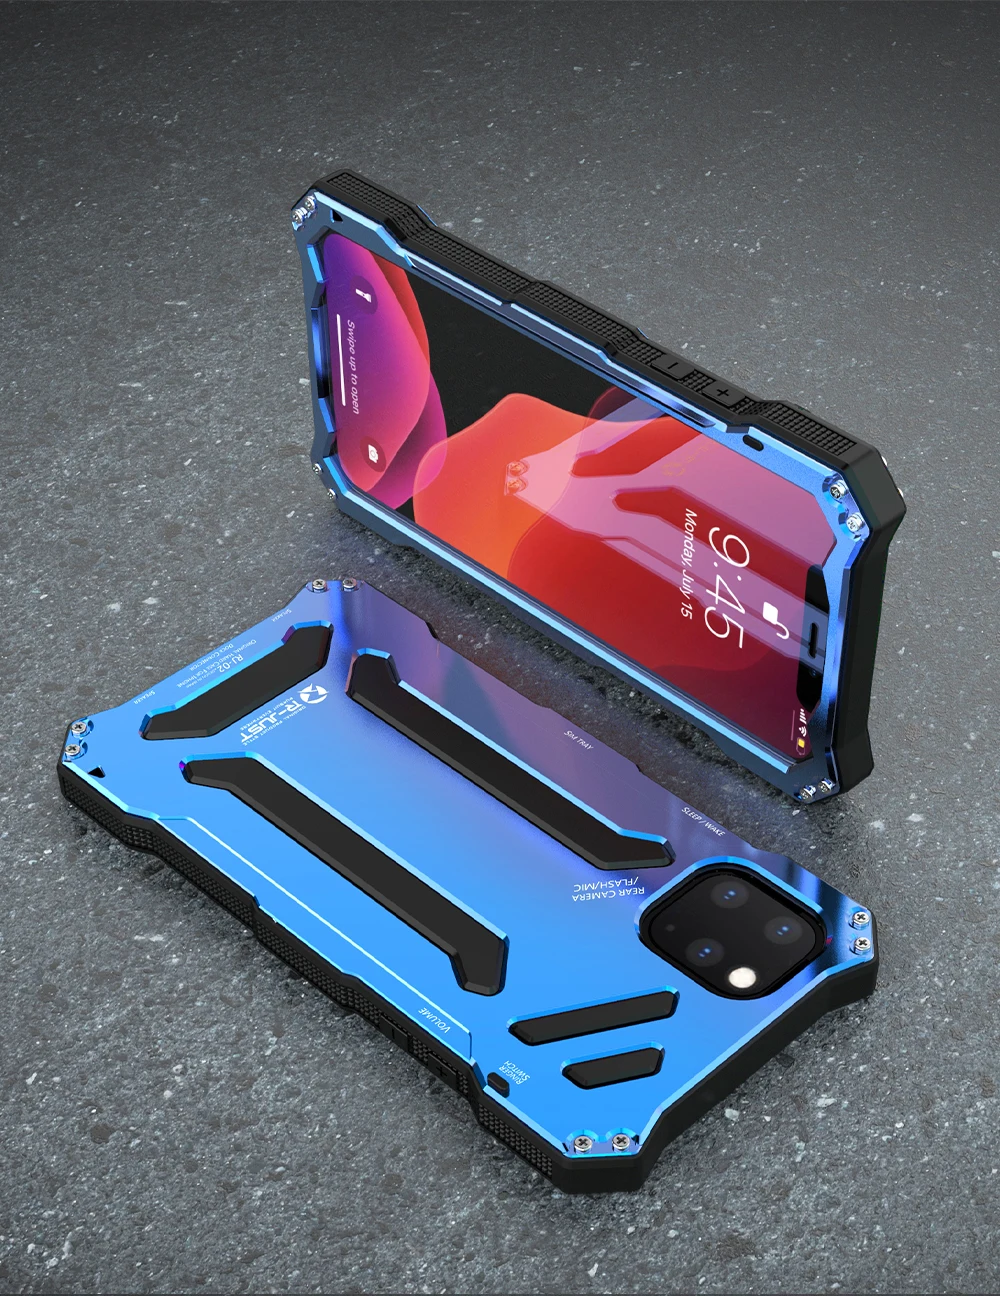 R-JUST Броня Алюминиевый металлический чехол для iPhone11 11 Pro Max 11 Pro XS XR чехлы для телефонов Gundam Life водонепроницаемый ударопрочный